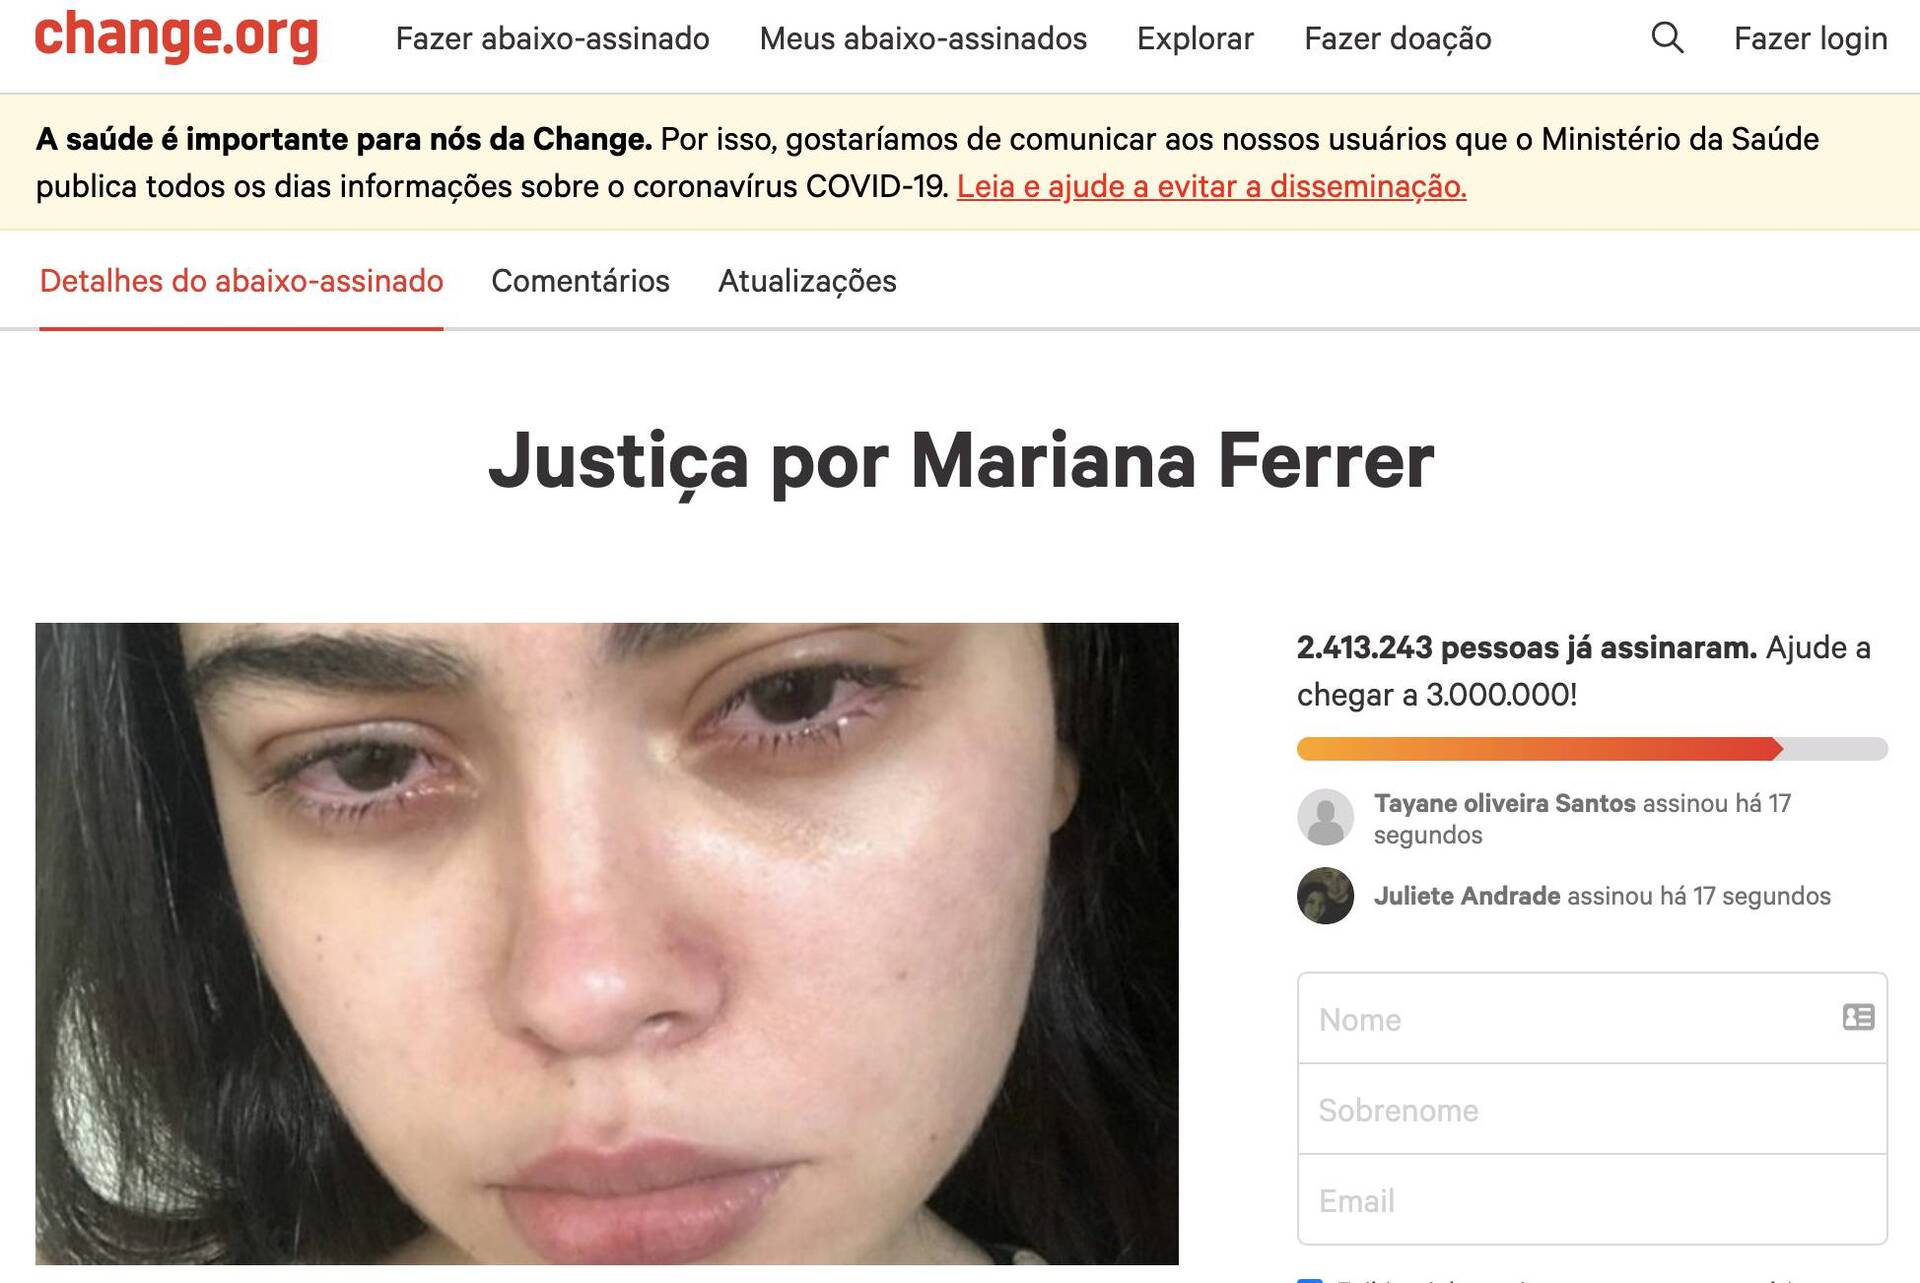  Petição por justiça a Mari Ferrer chega a 2,4 mi de assinaturas